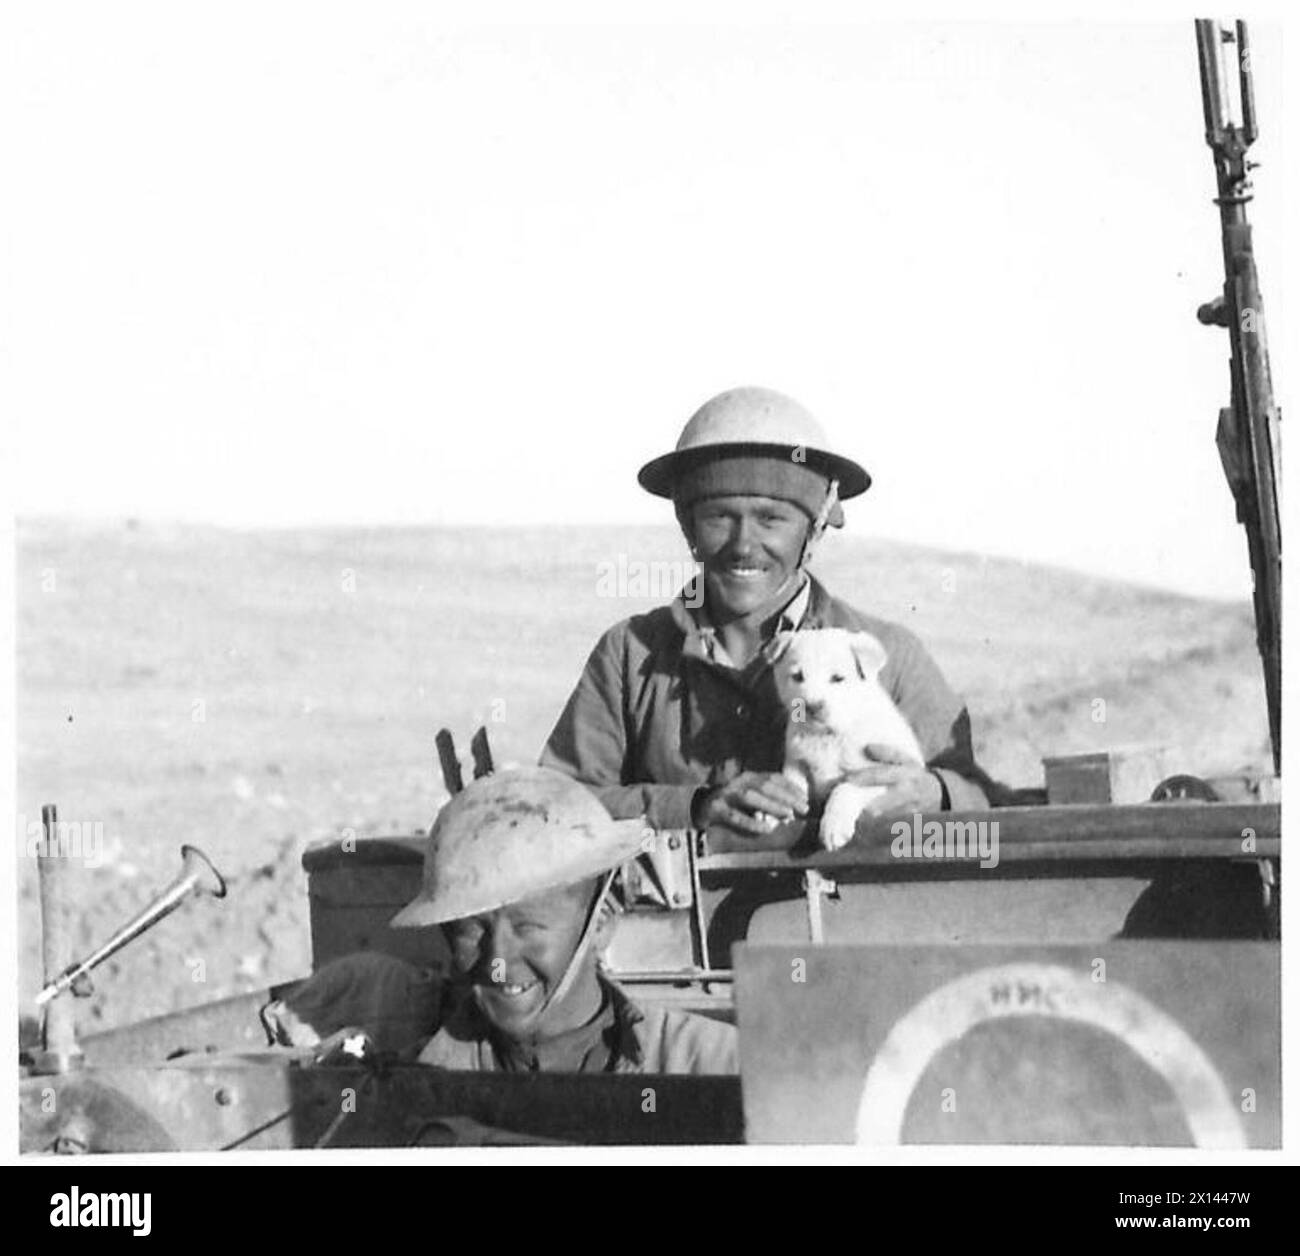 WEITERE BILDER DES BRITISCHEN VORMARSCHES IN DER westlichen WÜSTE - fröhliche Männer einer leichten mobilen Einheit mit ihrem Maskottchen auf der Straße Tobruk-Derna British Army Stockfoto